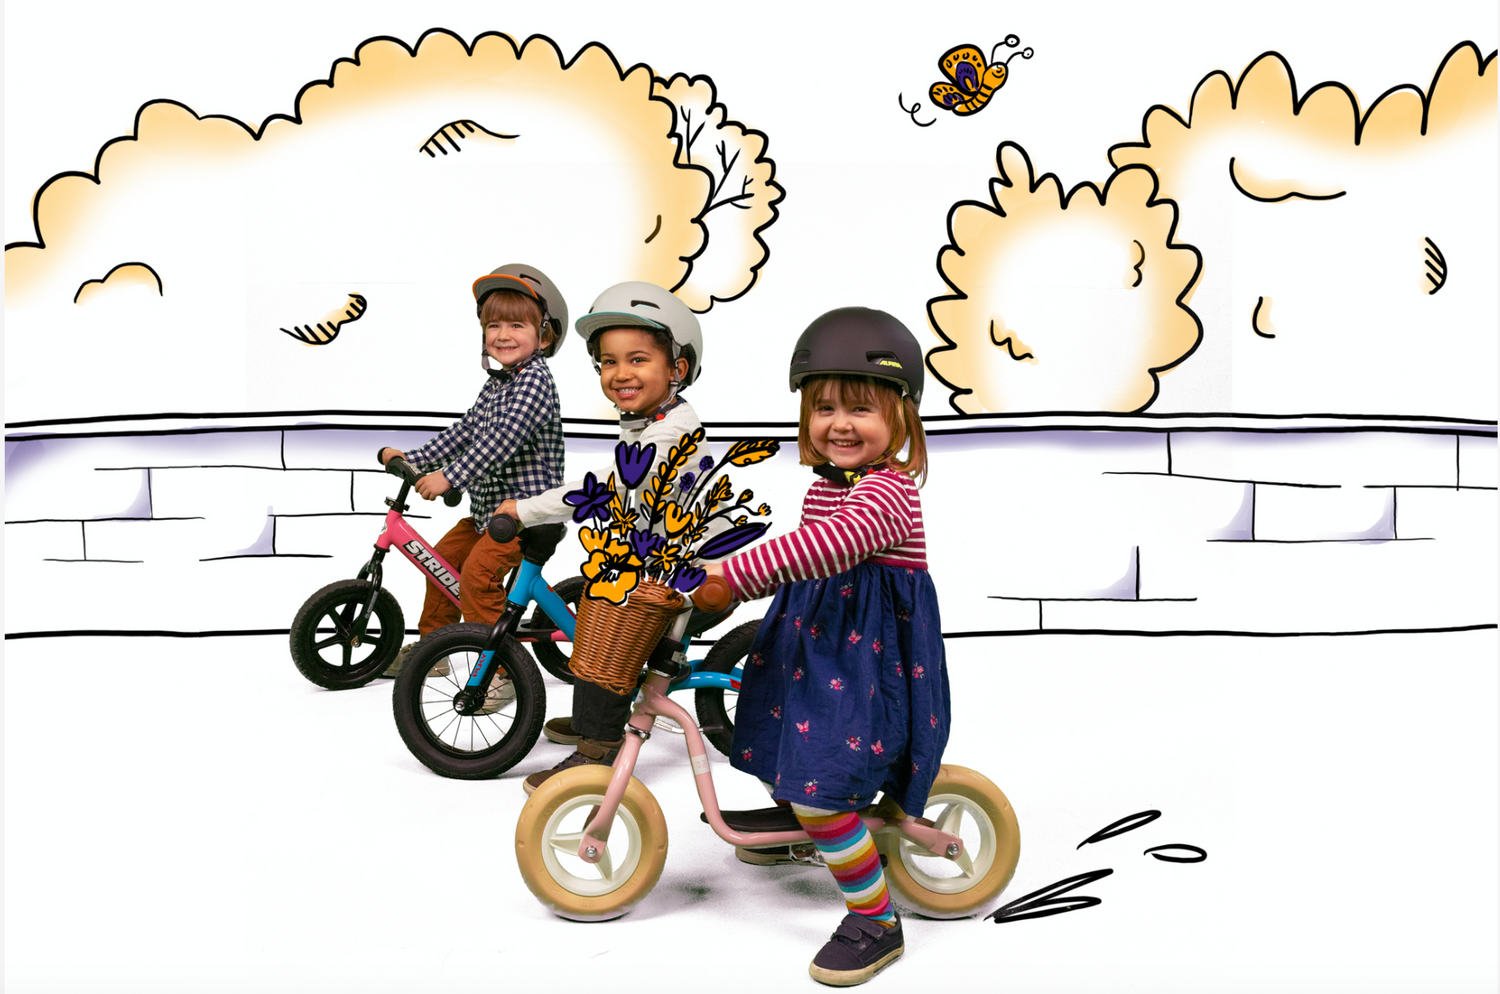 3 Kinder auf Laufrädern, ein Mädchen vorne mit Puky und Blumen im Korb, hinten zwei Jungs mit Puky und Strider